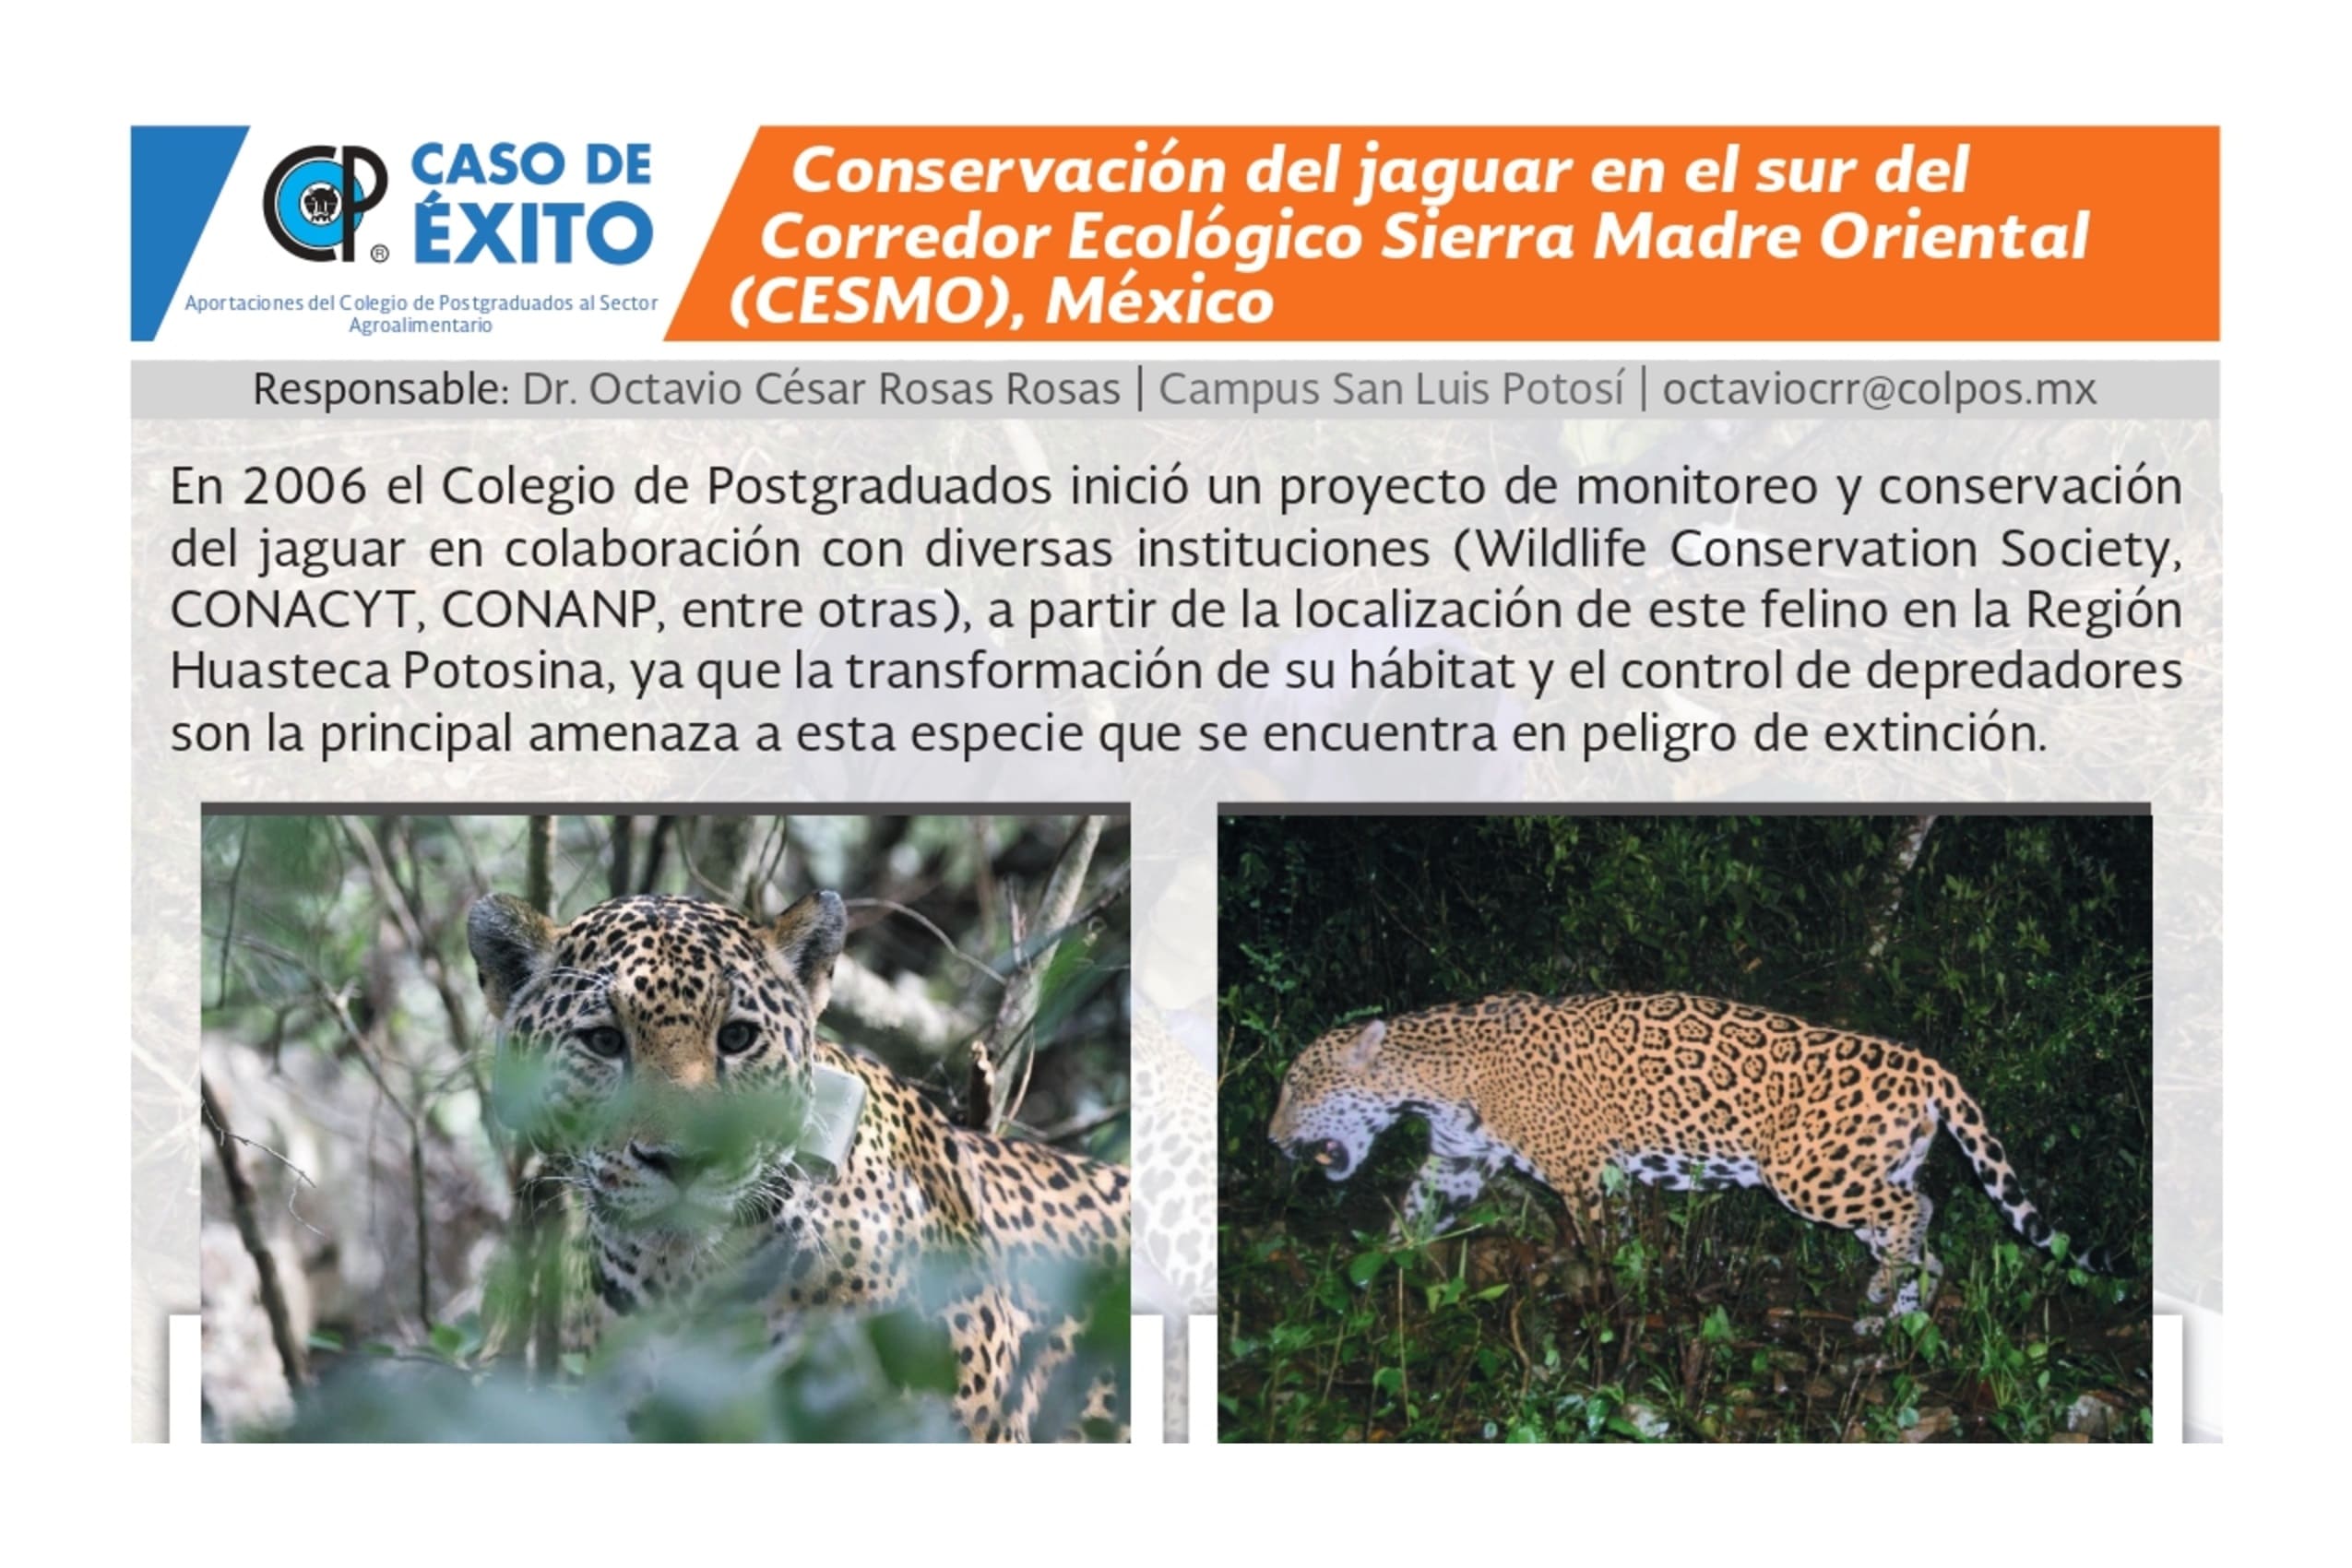 Conservación del jaguar en el sur del Corredor Ecológico Sierra Madre Oriental (CESMO), México.